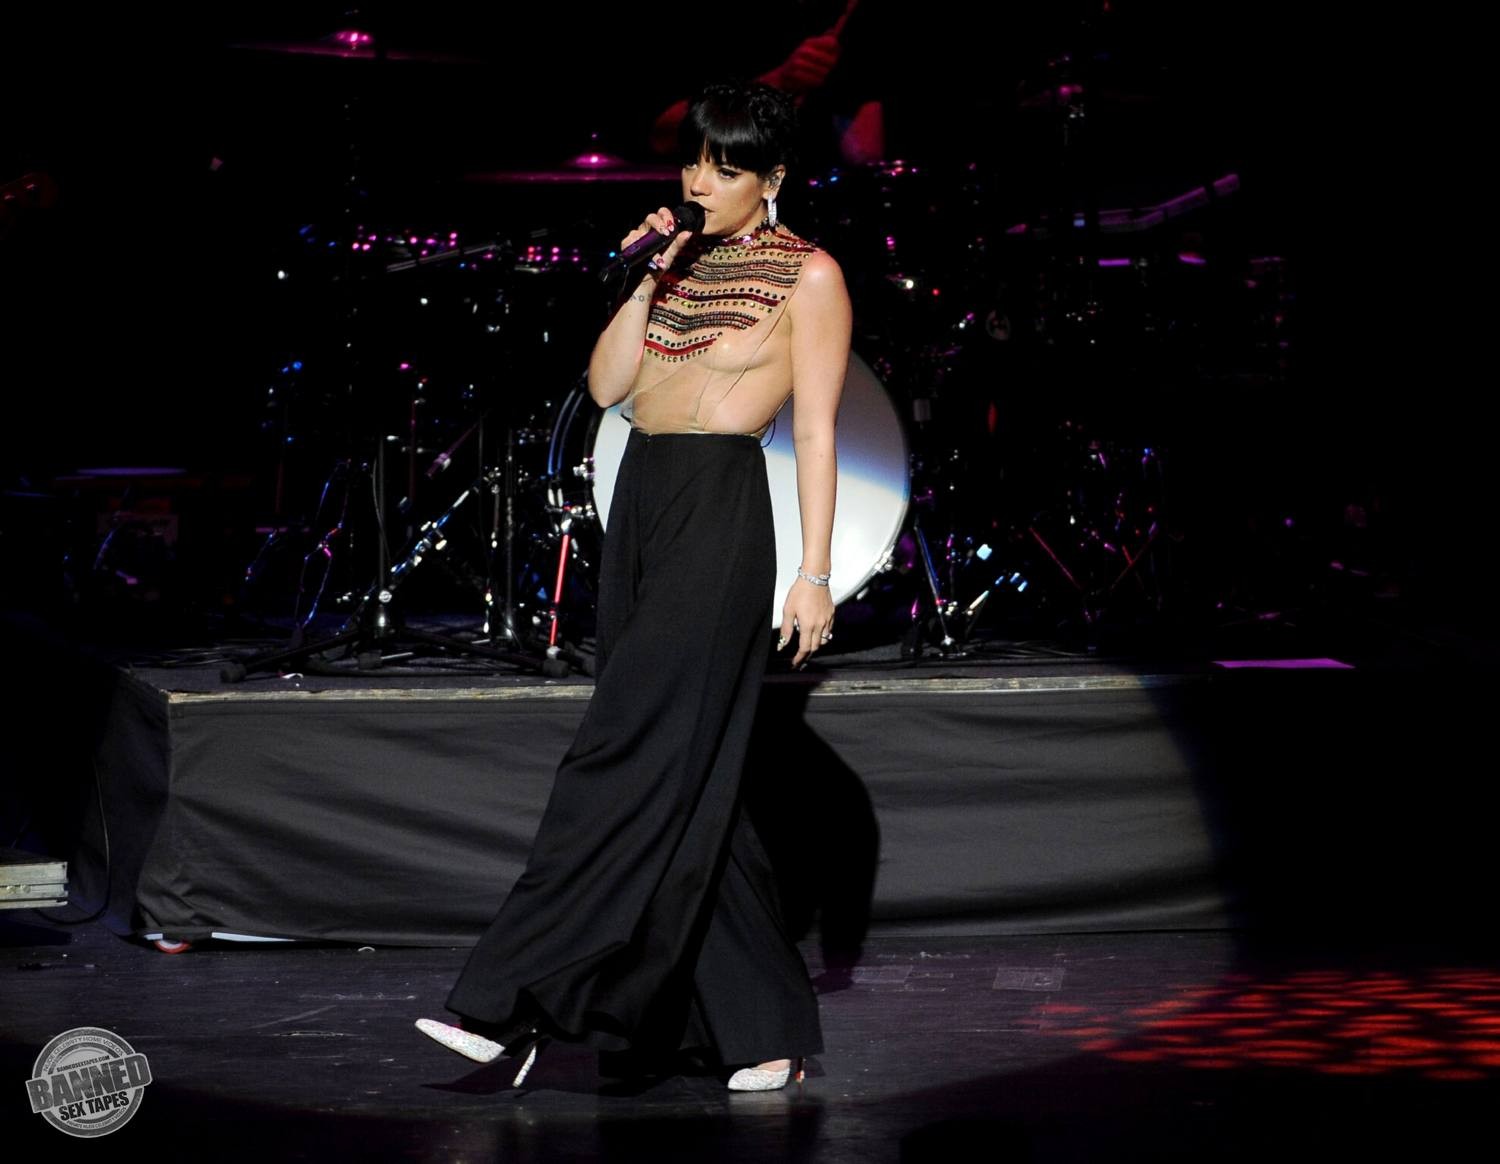 Lily allen montre ses seins nus à travers un haut transparent pendant un concert
 #75191538